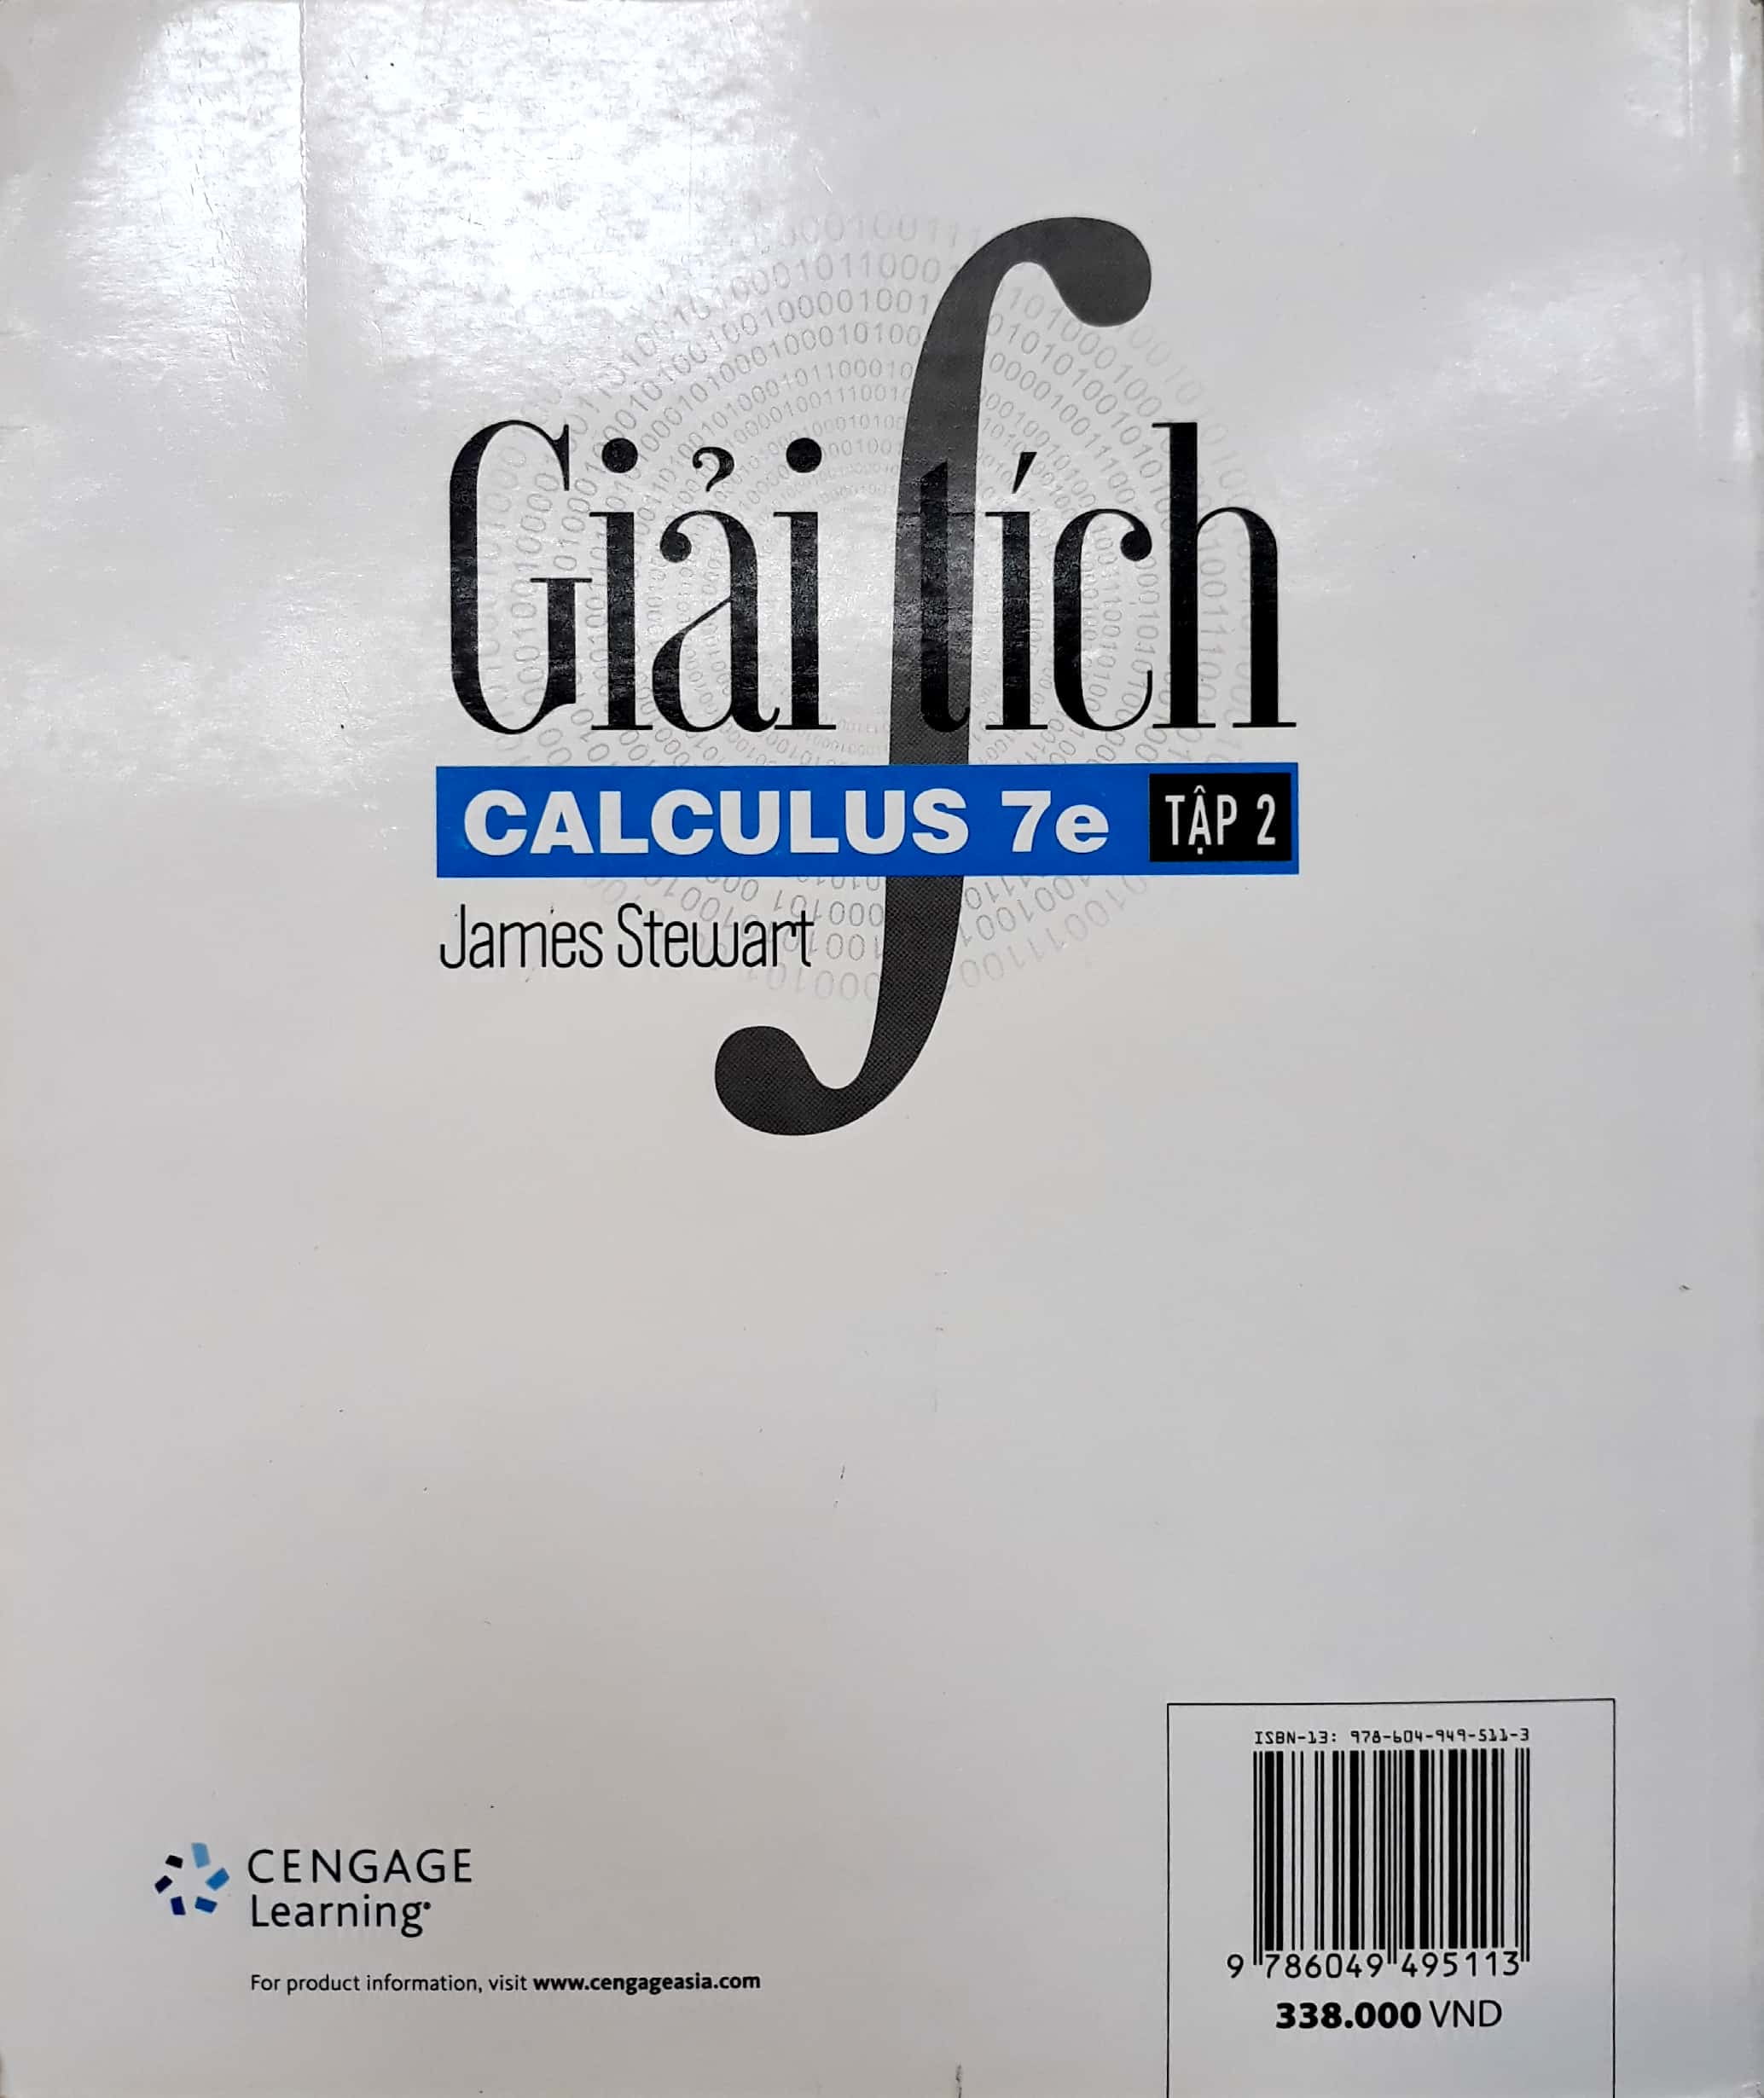 Giải Tích - Tập 2 - Calculus 7e